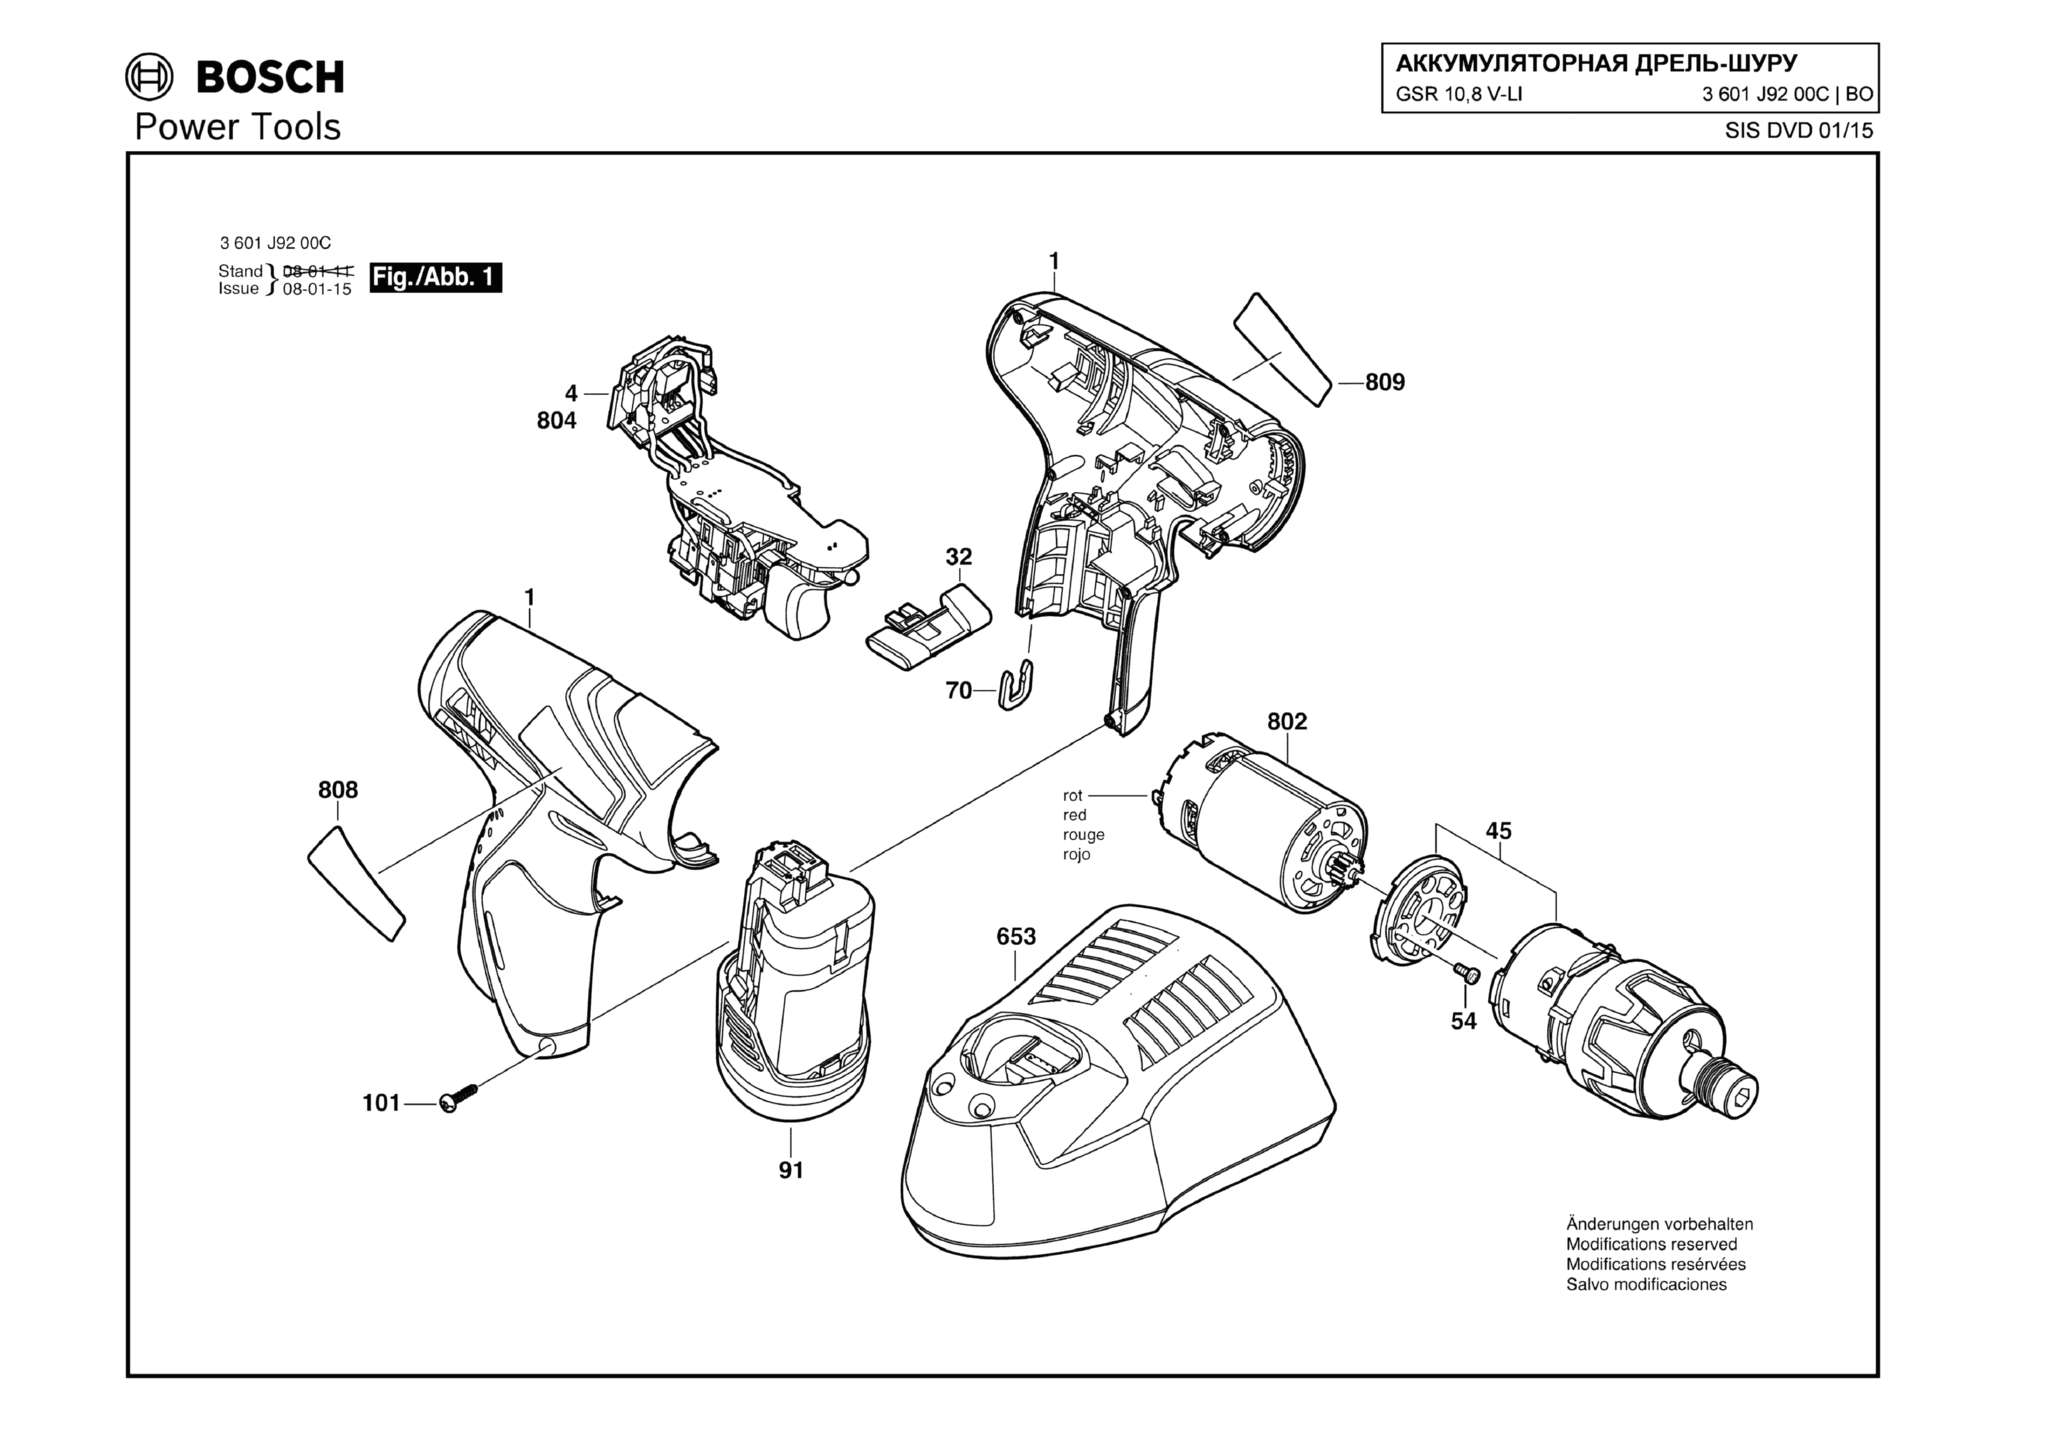 Запчасти, схема и деталировка Bosch GSR 10,8 V-LI (ТИП 3601J9200C)